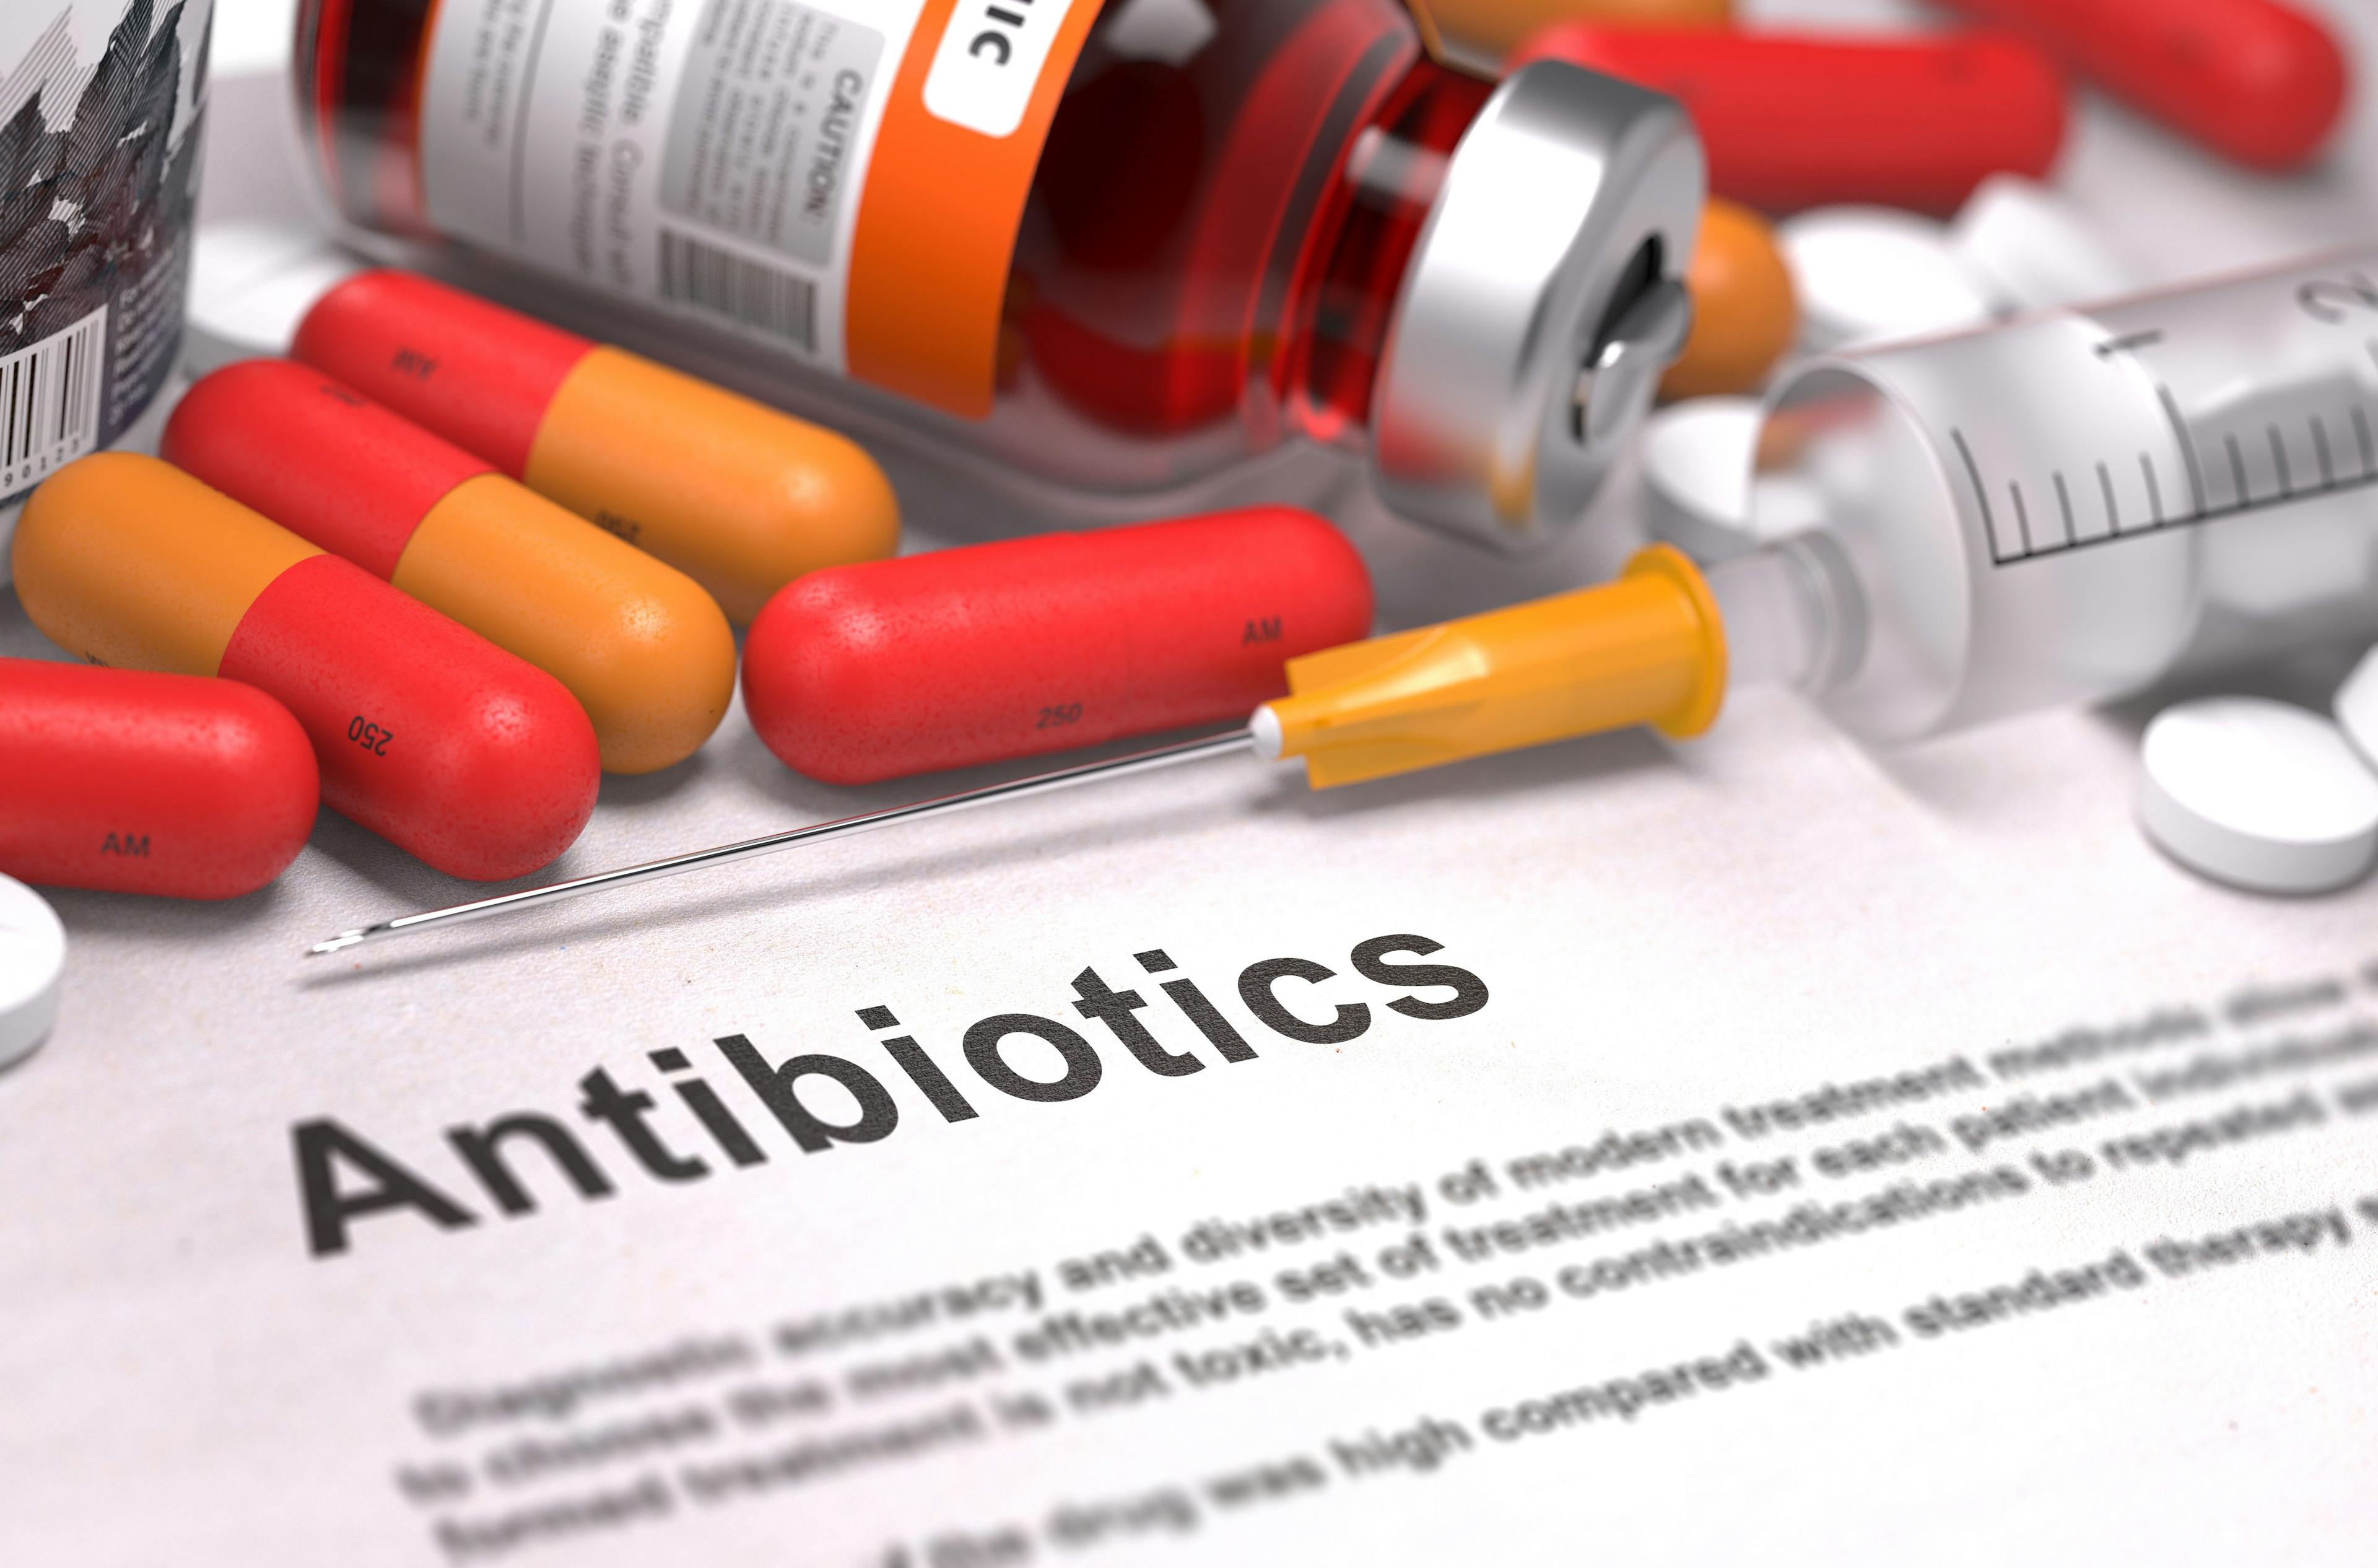 The stigma around antibiotics for recurrent UTIs